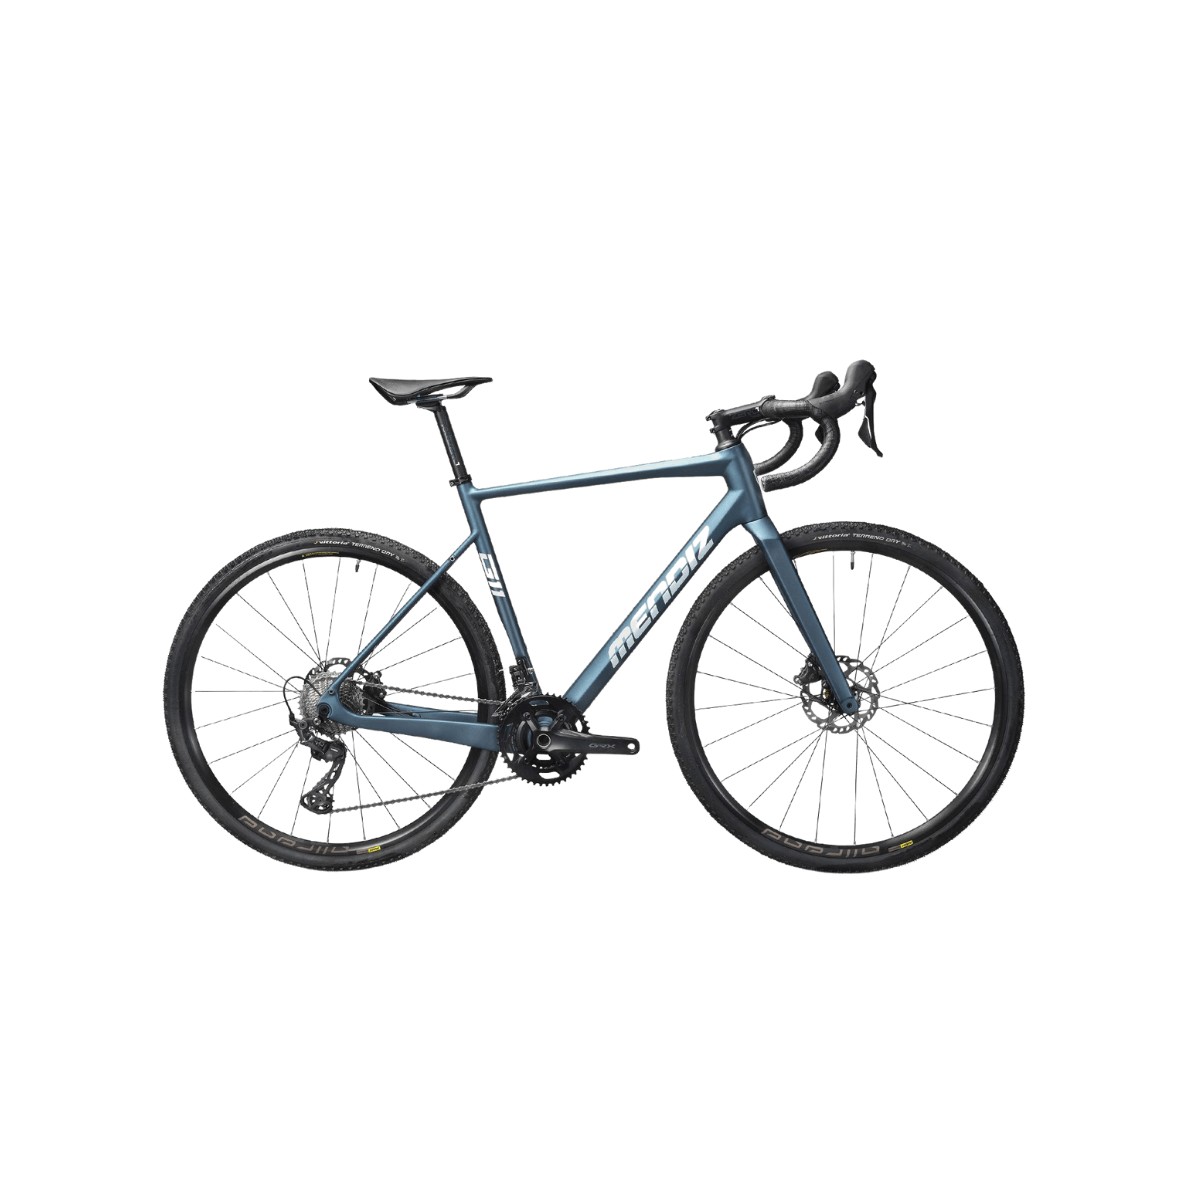 Bicicleta MENDIZ G10 GRX 400 Gris Azulado, Size 52